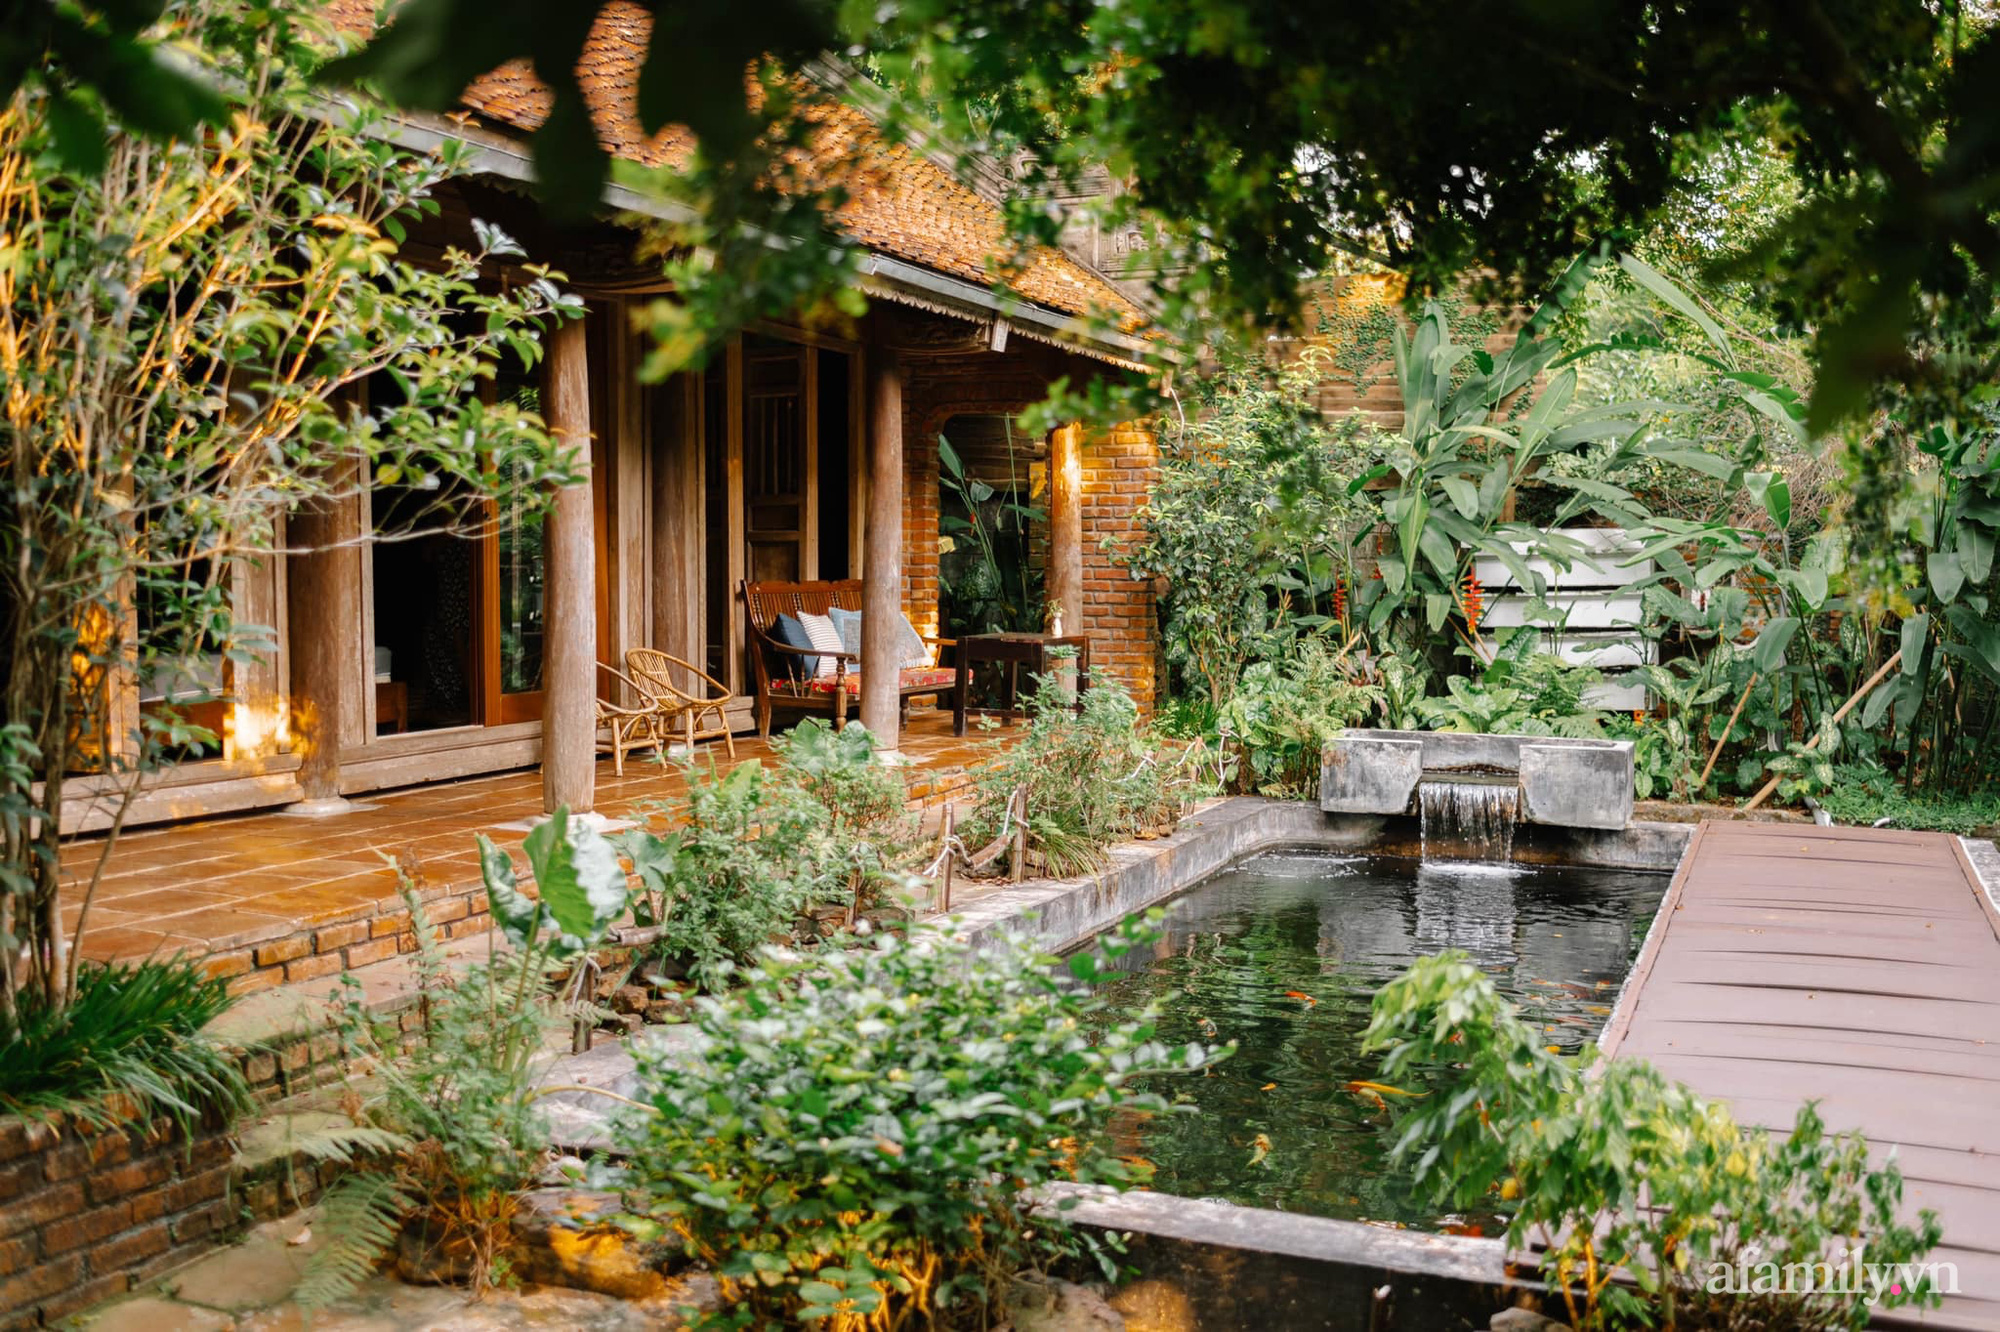 10 Mẫu Nhà Vườn Nhỏ Đẹp Xinh Chỉ Thấy Trong Mơ. | Nandesign